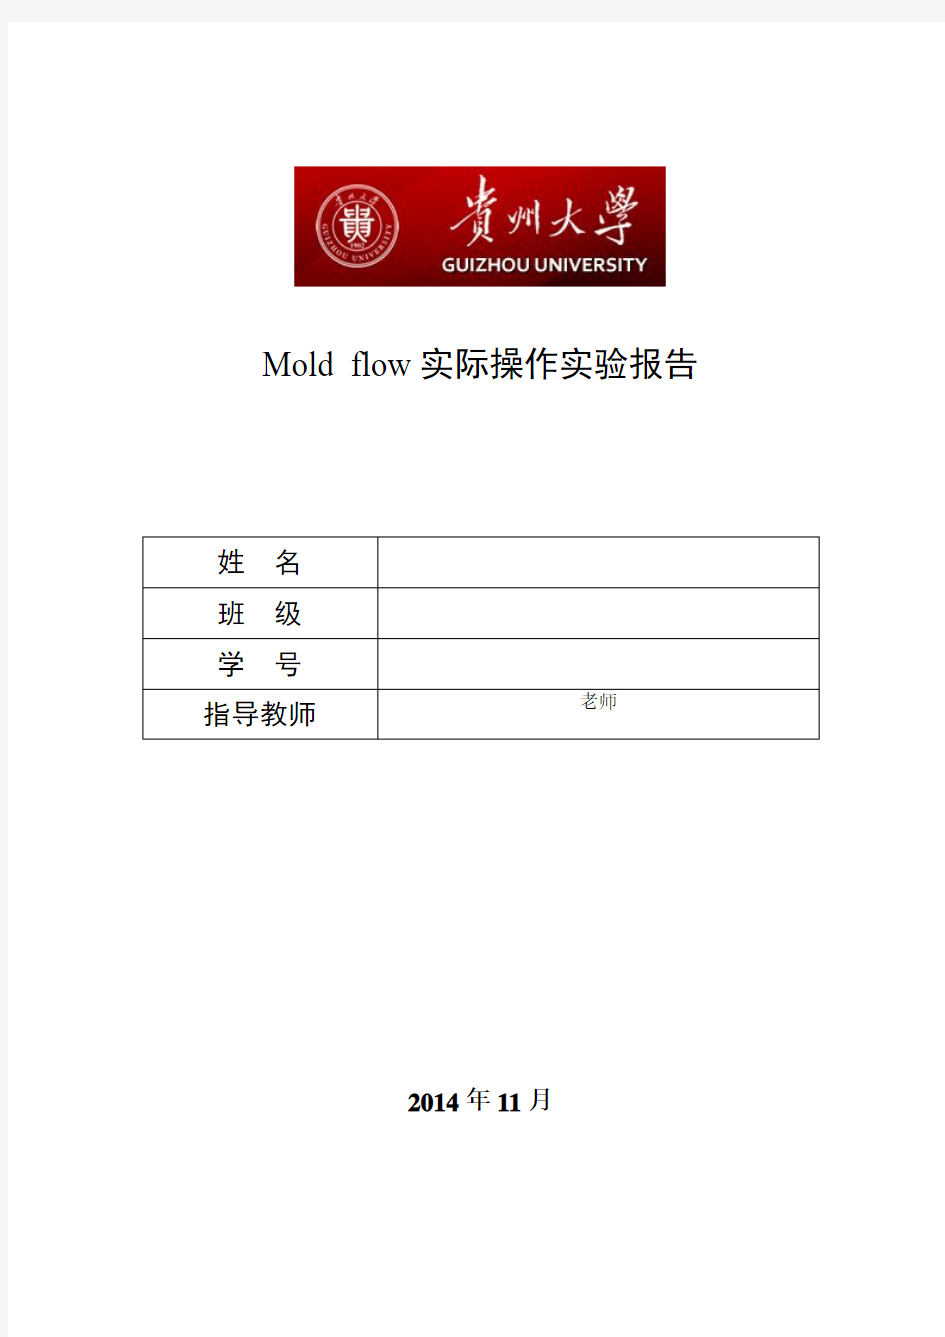 Moldflow实验报告贵州大学机械界面、操作、划分网格、熔接痕